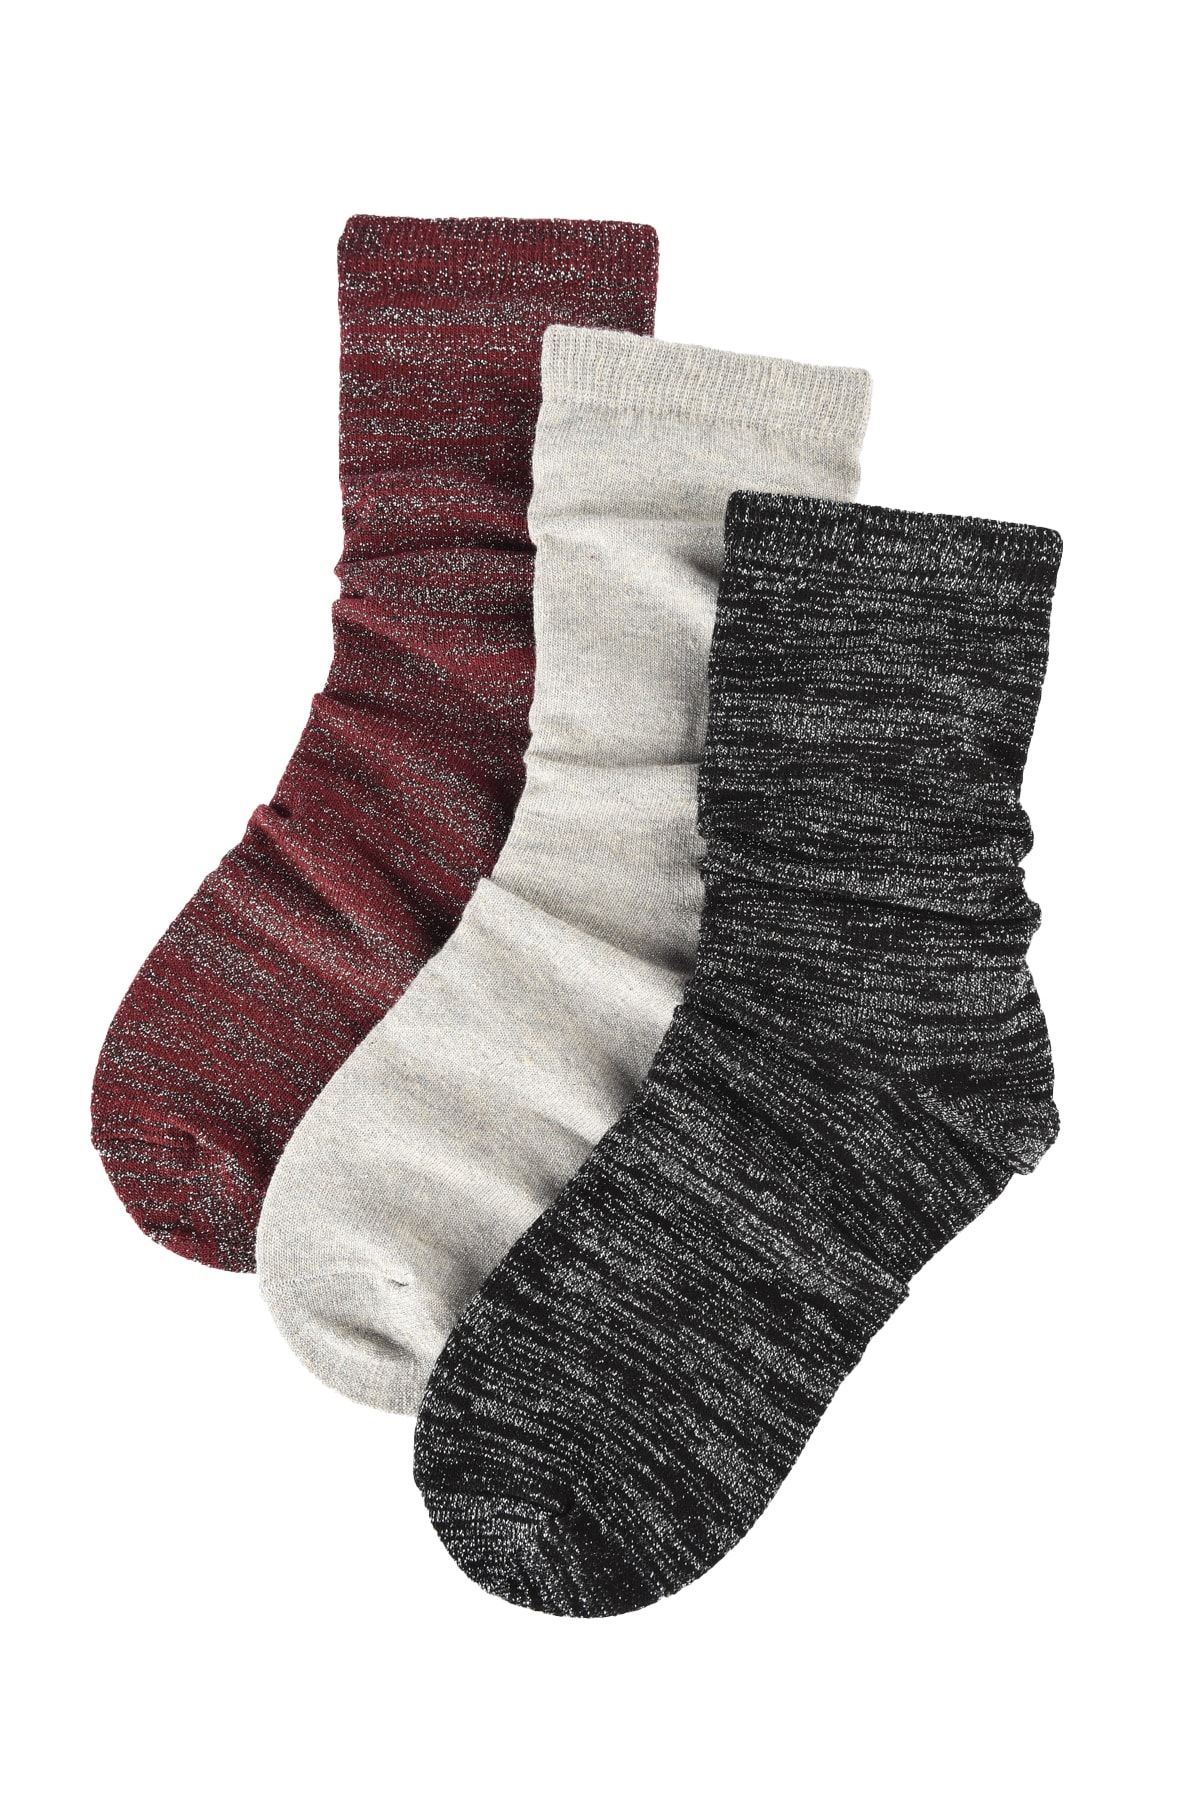 TRENDYOLMİLLA 3'lü Siyah Simli Örme Çorap TWOAW20CO0056